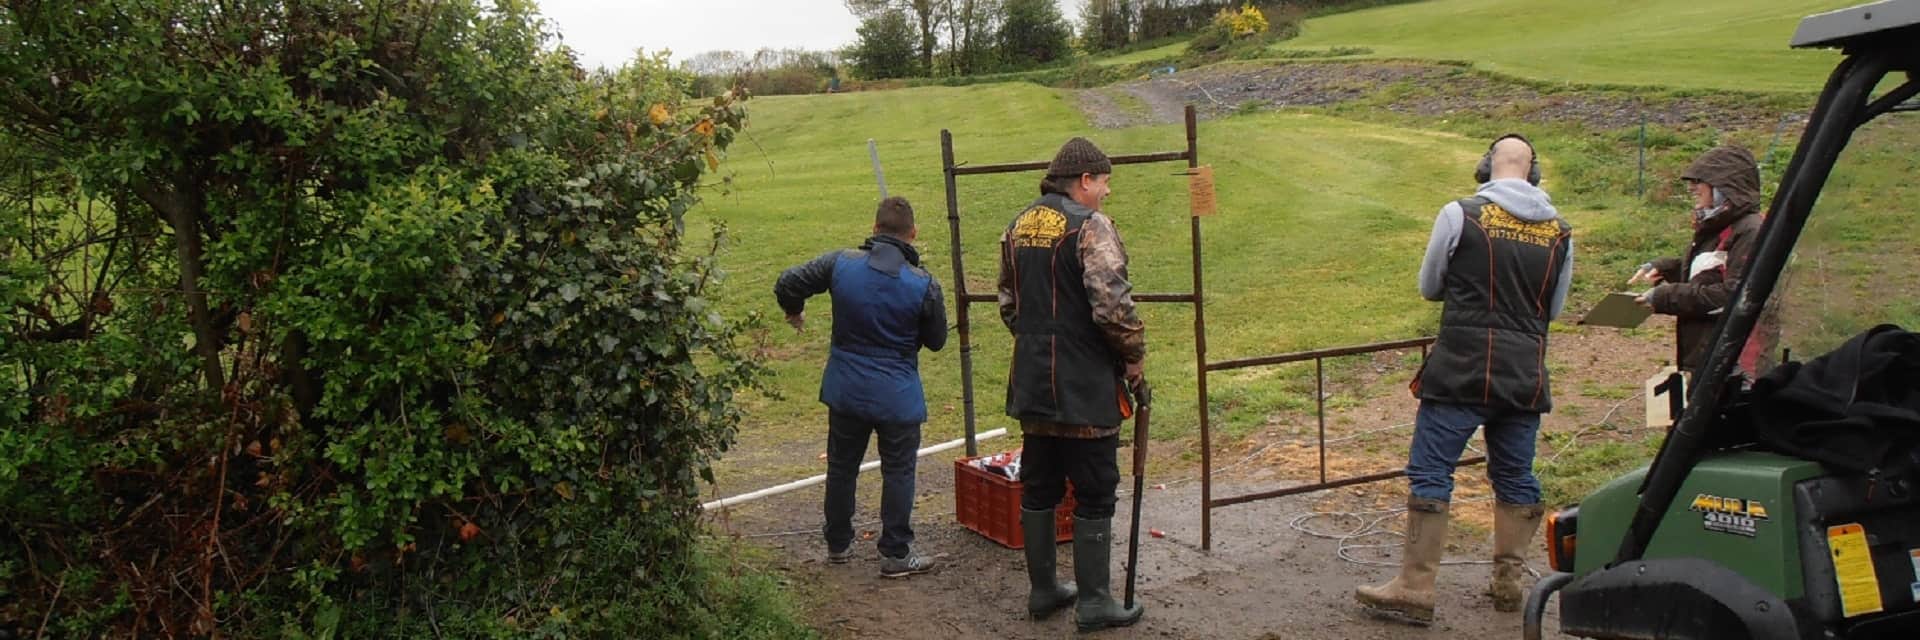 Cart Ridge Shooting Ground in UK